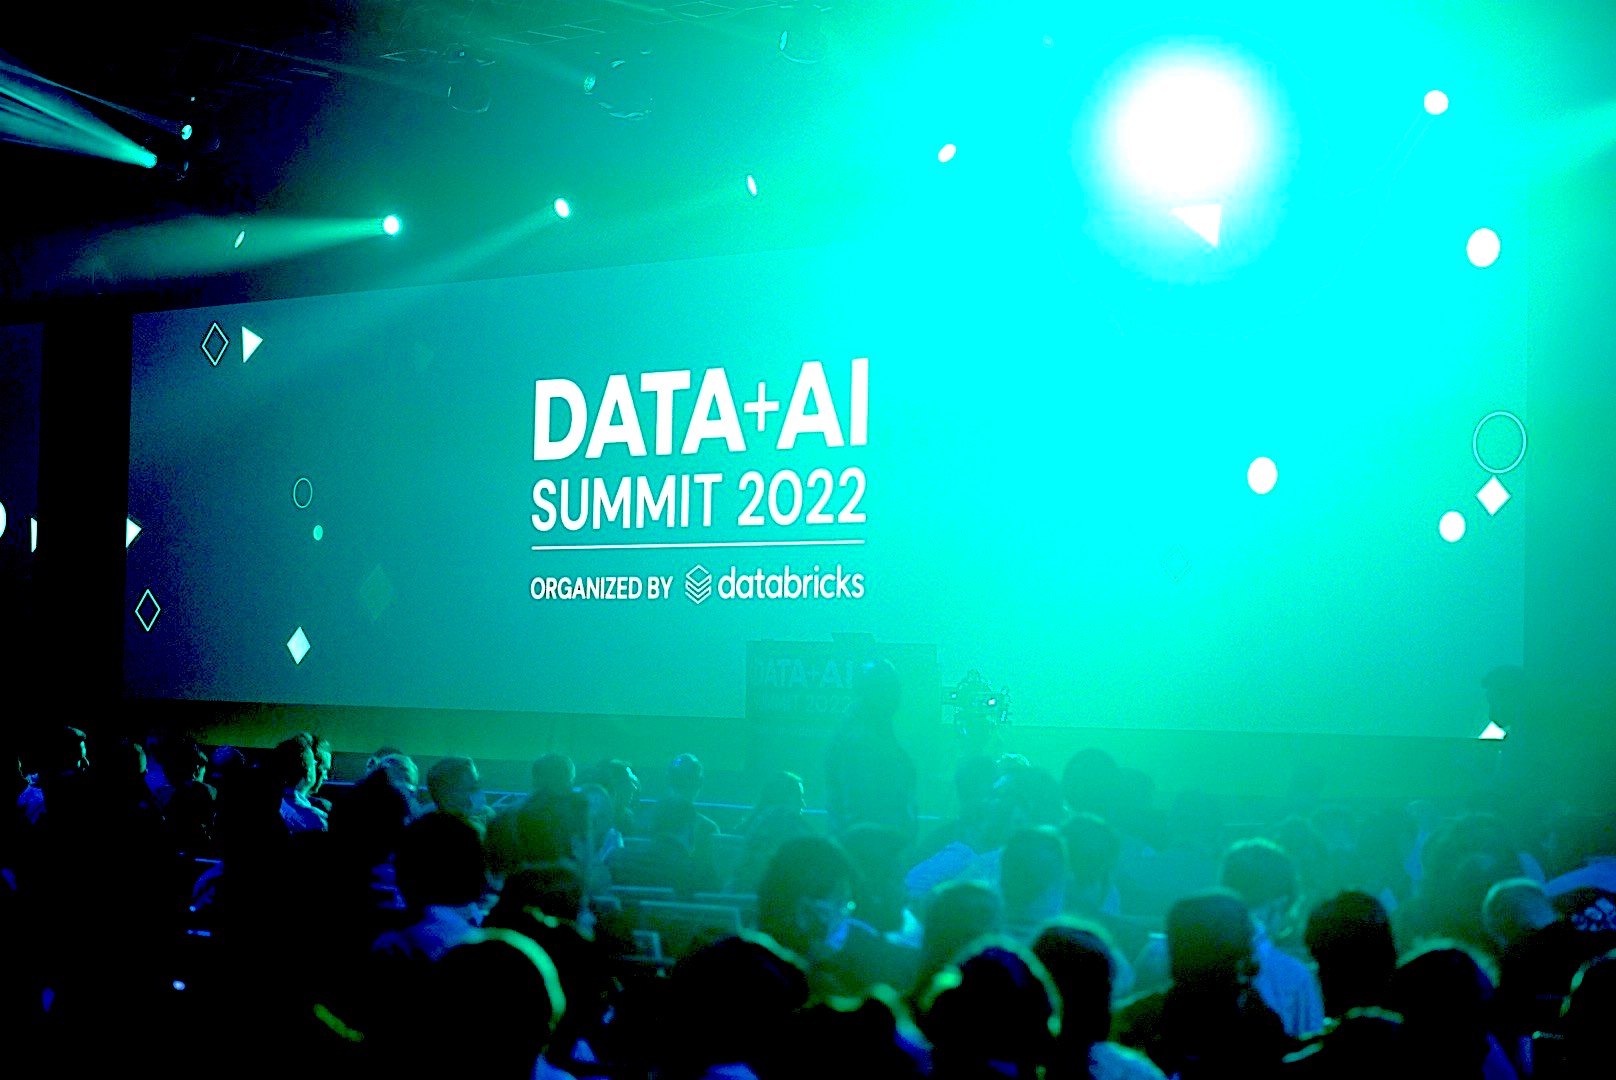 Databricks' Data + AI Summit will focus on nextgen data infrastructure